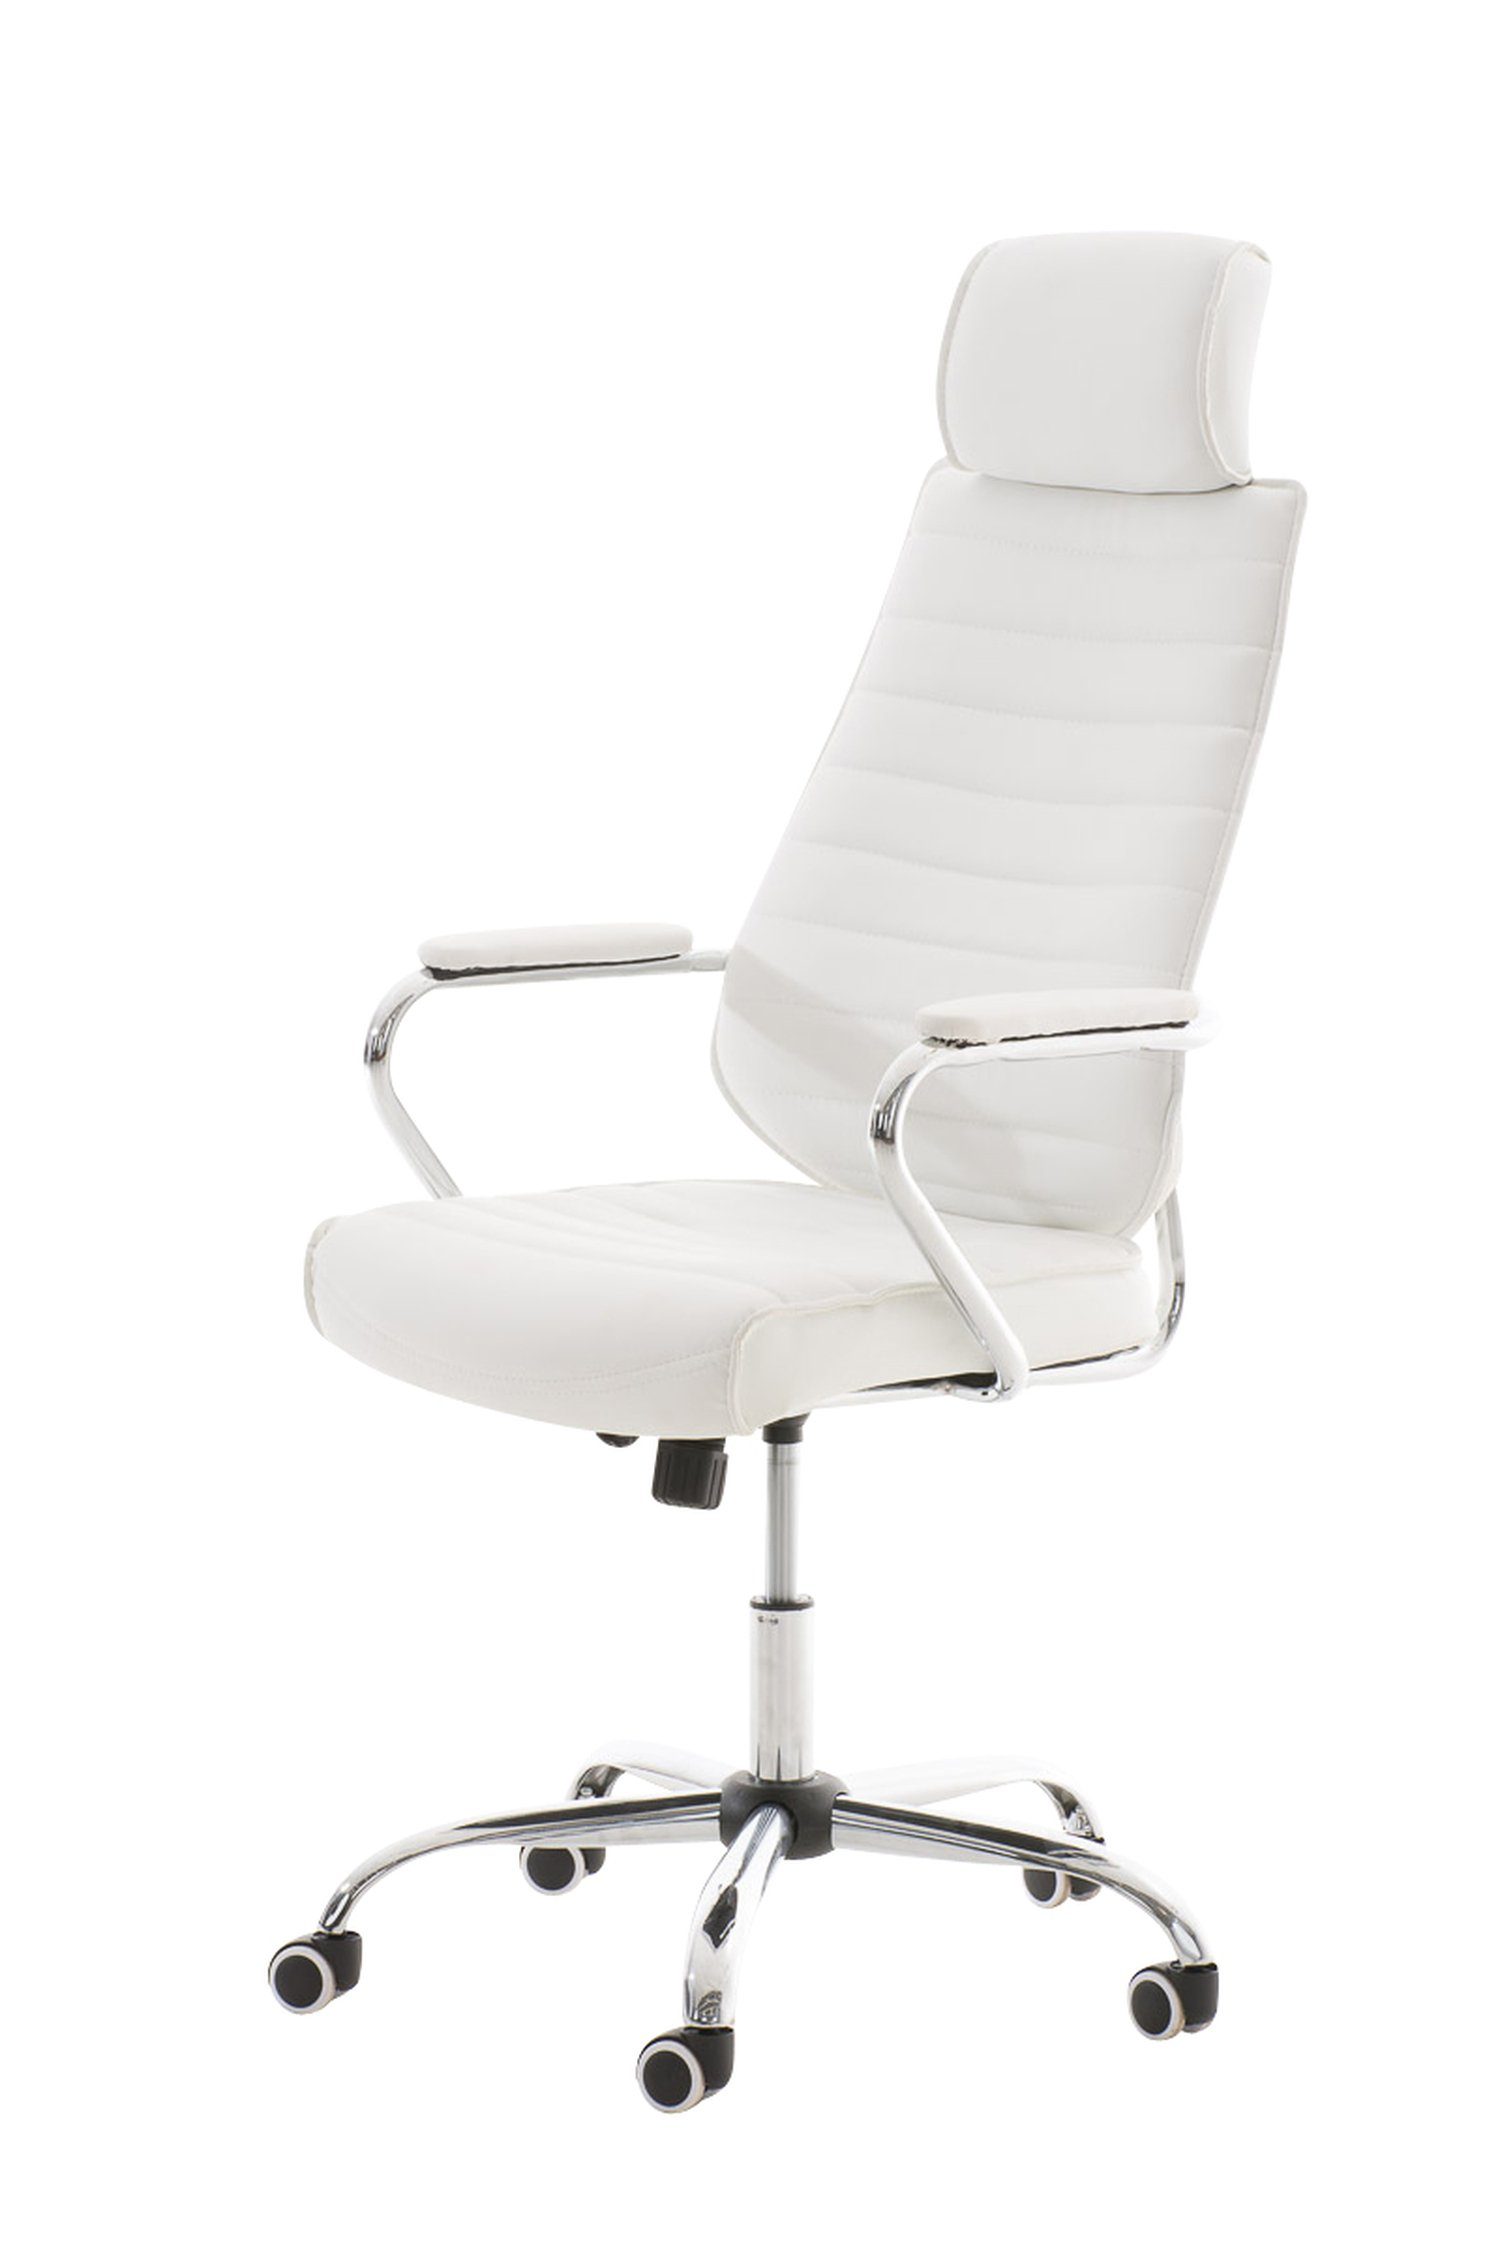 TPFLiving Bürostuhl Rocket V2 mit bequemer Rückenlehne - höhenverstellbar und 360° drehbar (Schreibtischstuhl, Drehstuhl, Chefsessel, Bürostuhl XXL), Gestell: Metall chrom - Sitz: Kunstleder weiß